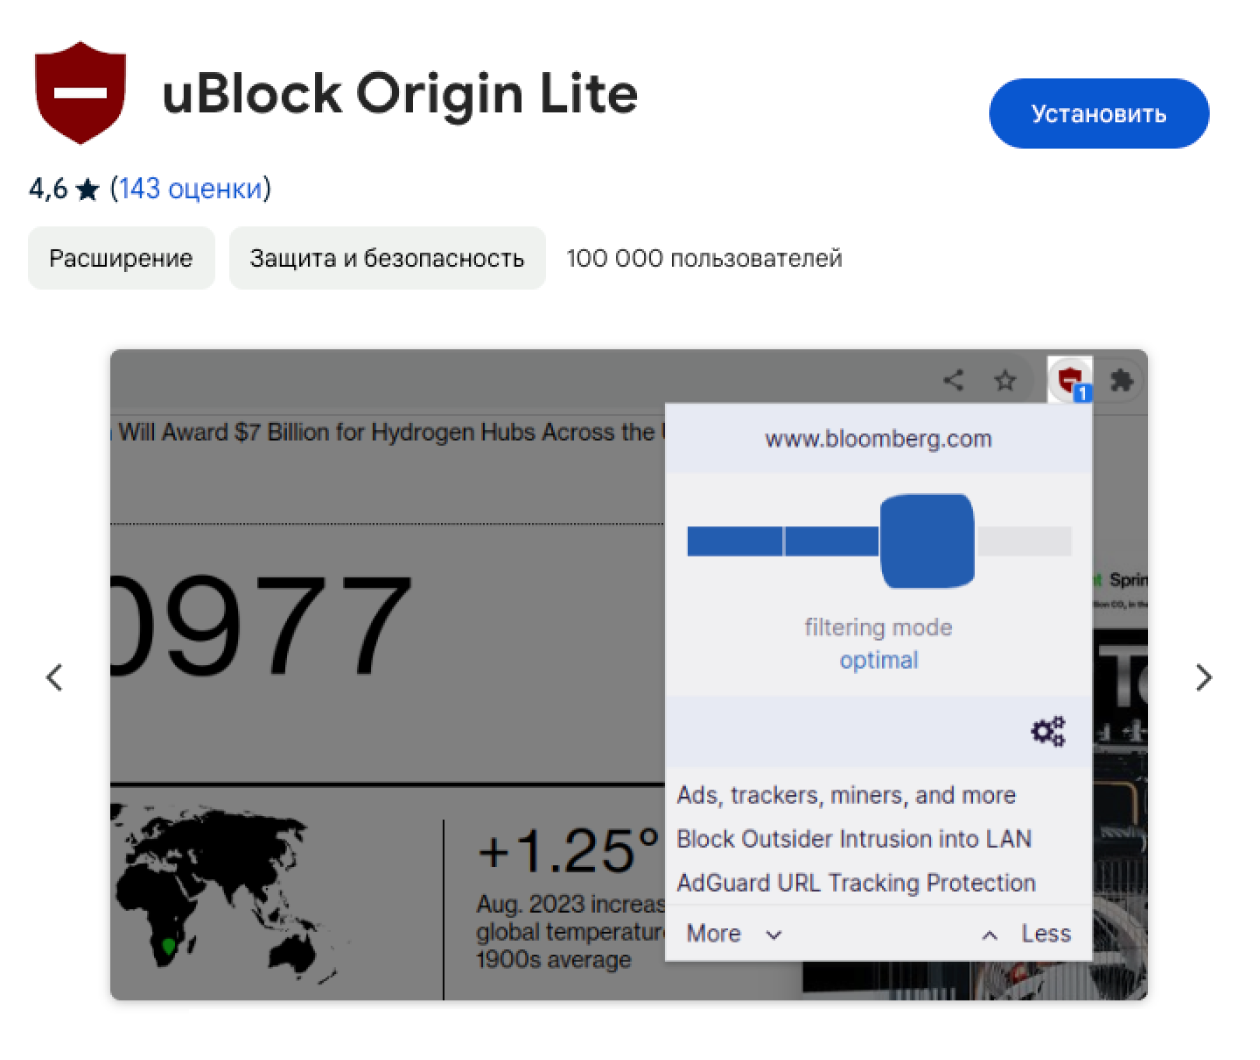 Благодаря Manifest V3 облегченная версия uBlock Origin даже не требует разрешения на просмотр сайтов — но без него не получится включить полную защиту